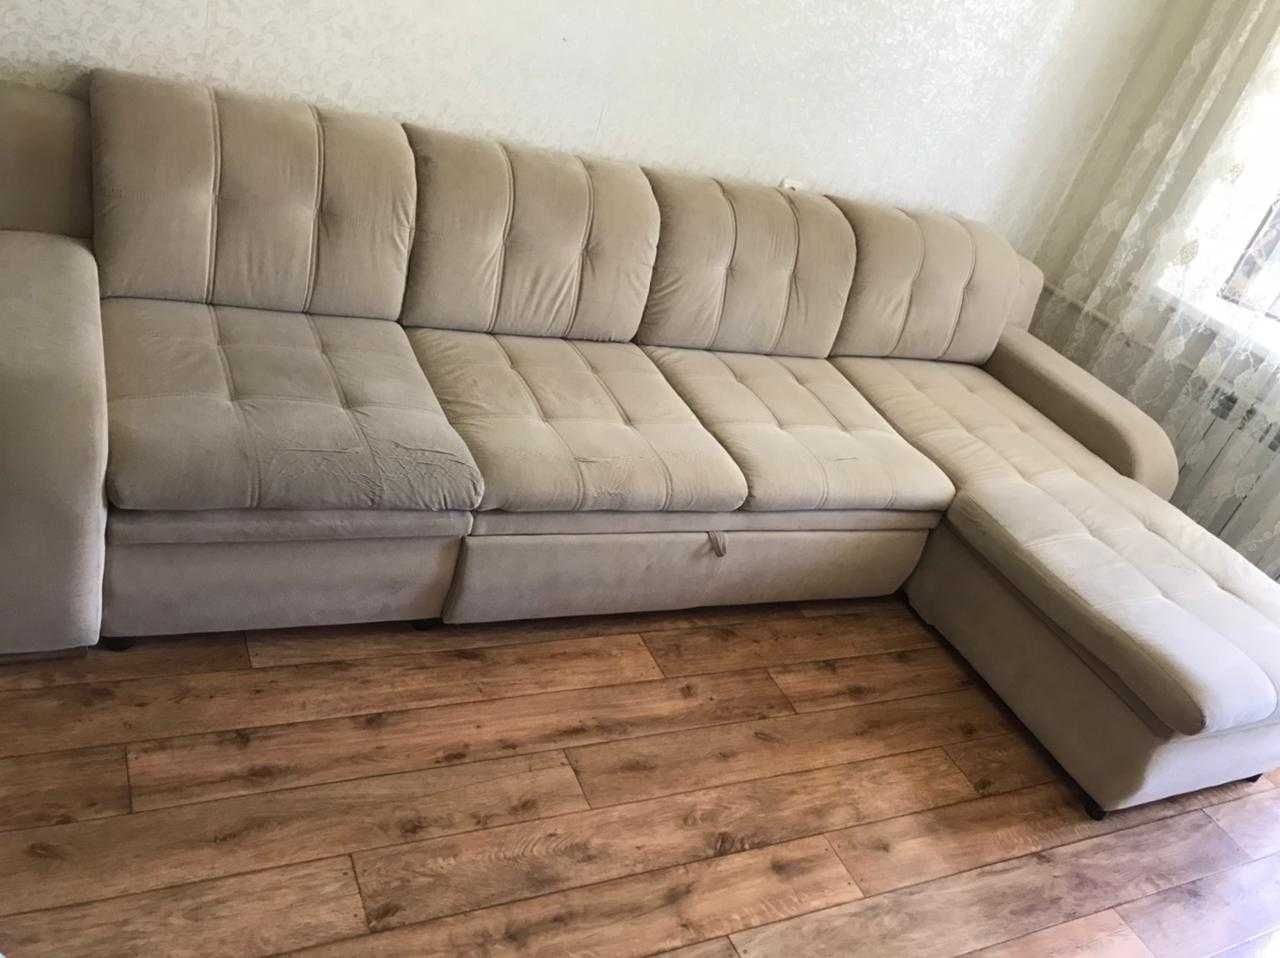 Срочно ! Продам диван, в отличном состоянии.